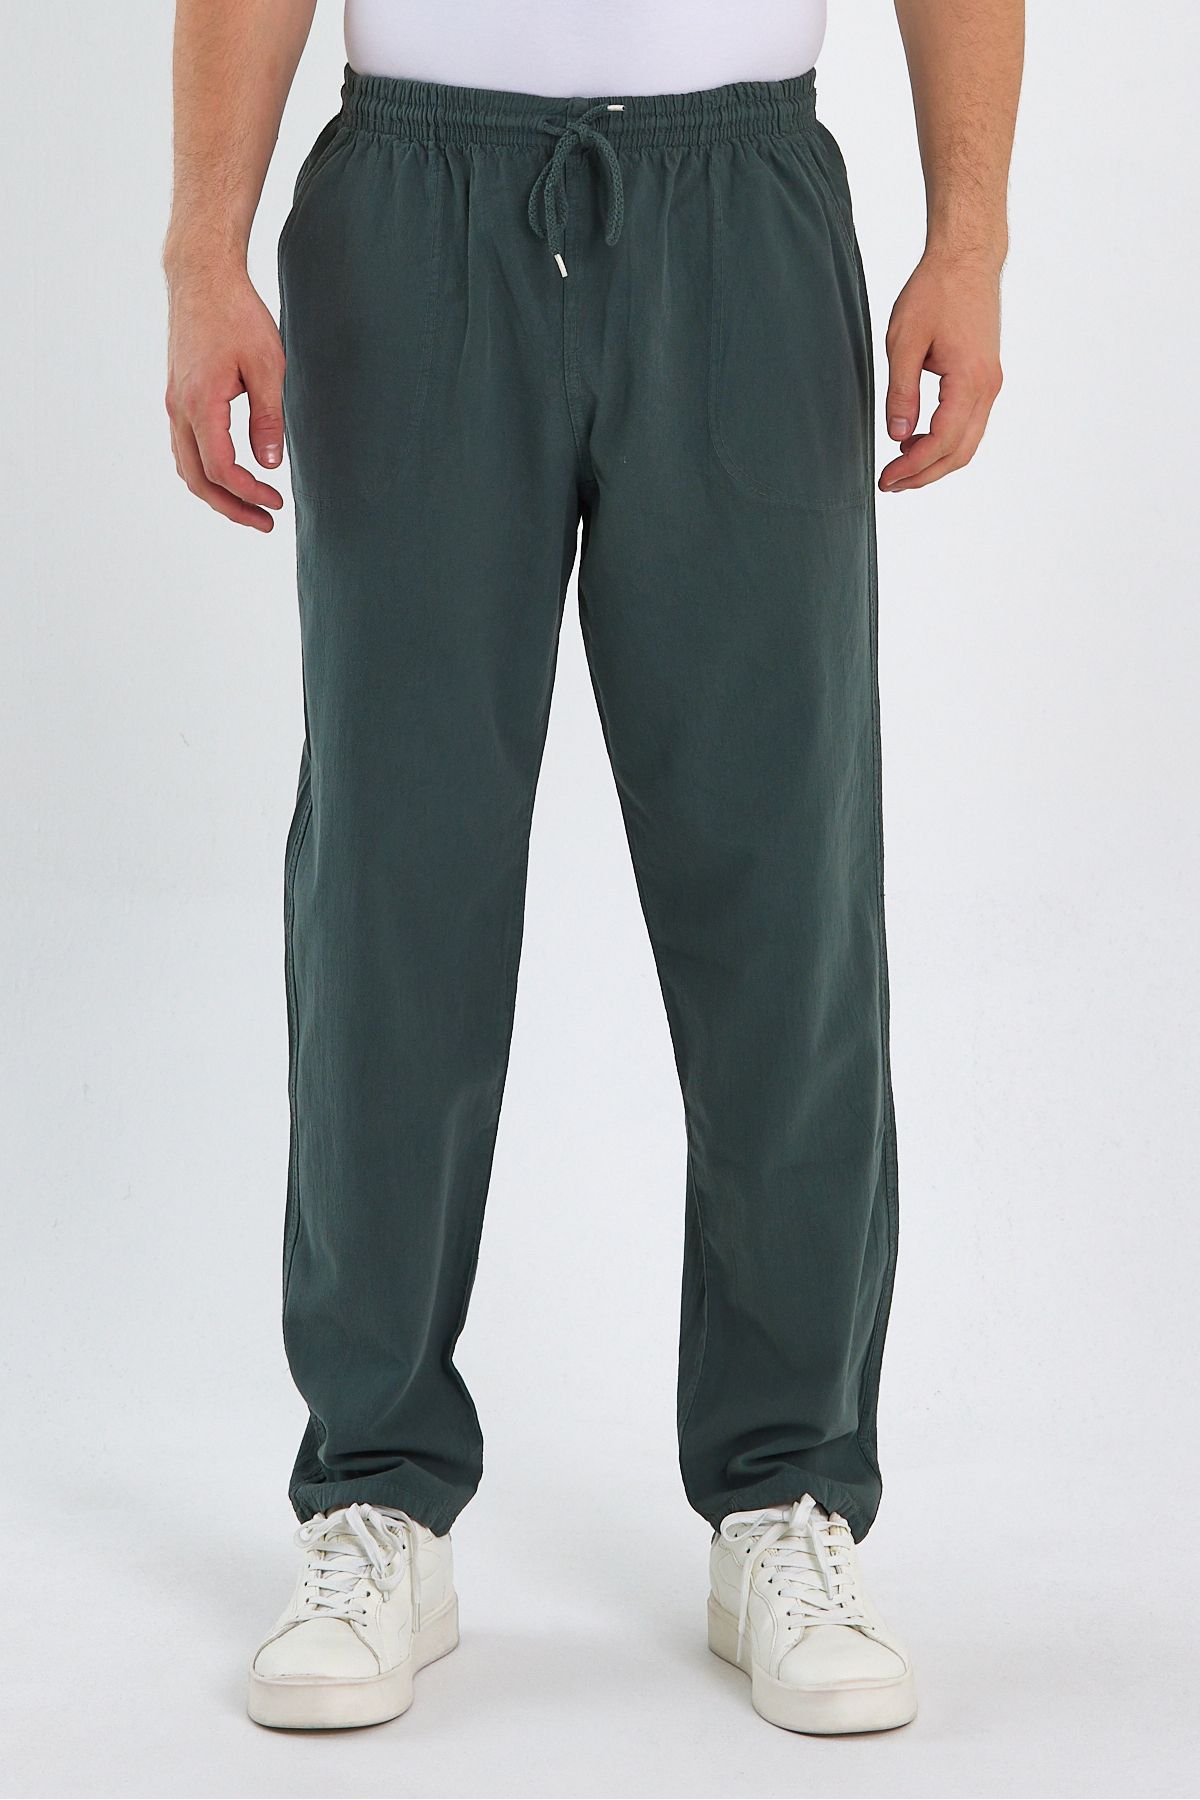 COMBINE Koyu Yeşil Renk Erkek Yandan Cepli Beli Lastikli Kordonlu Pantolon